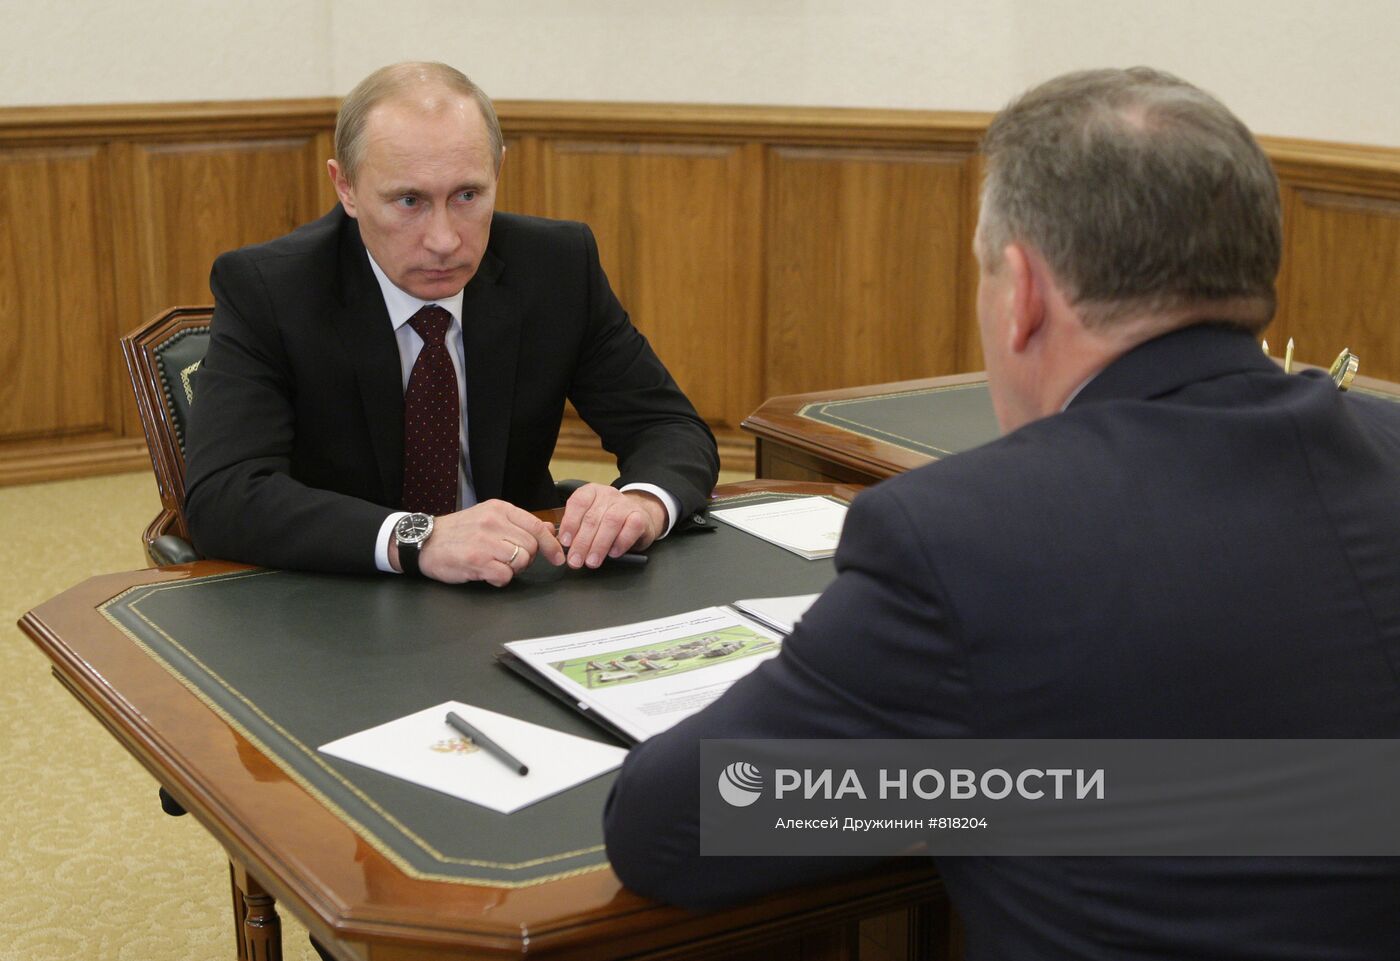 Встреча Владимира Путина с Вячеславом Шпортом